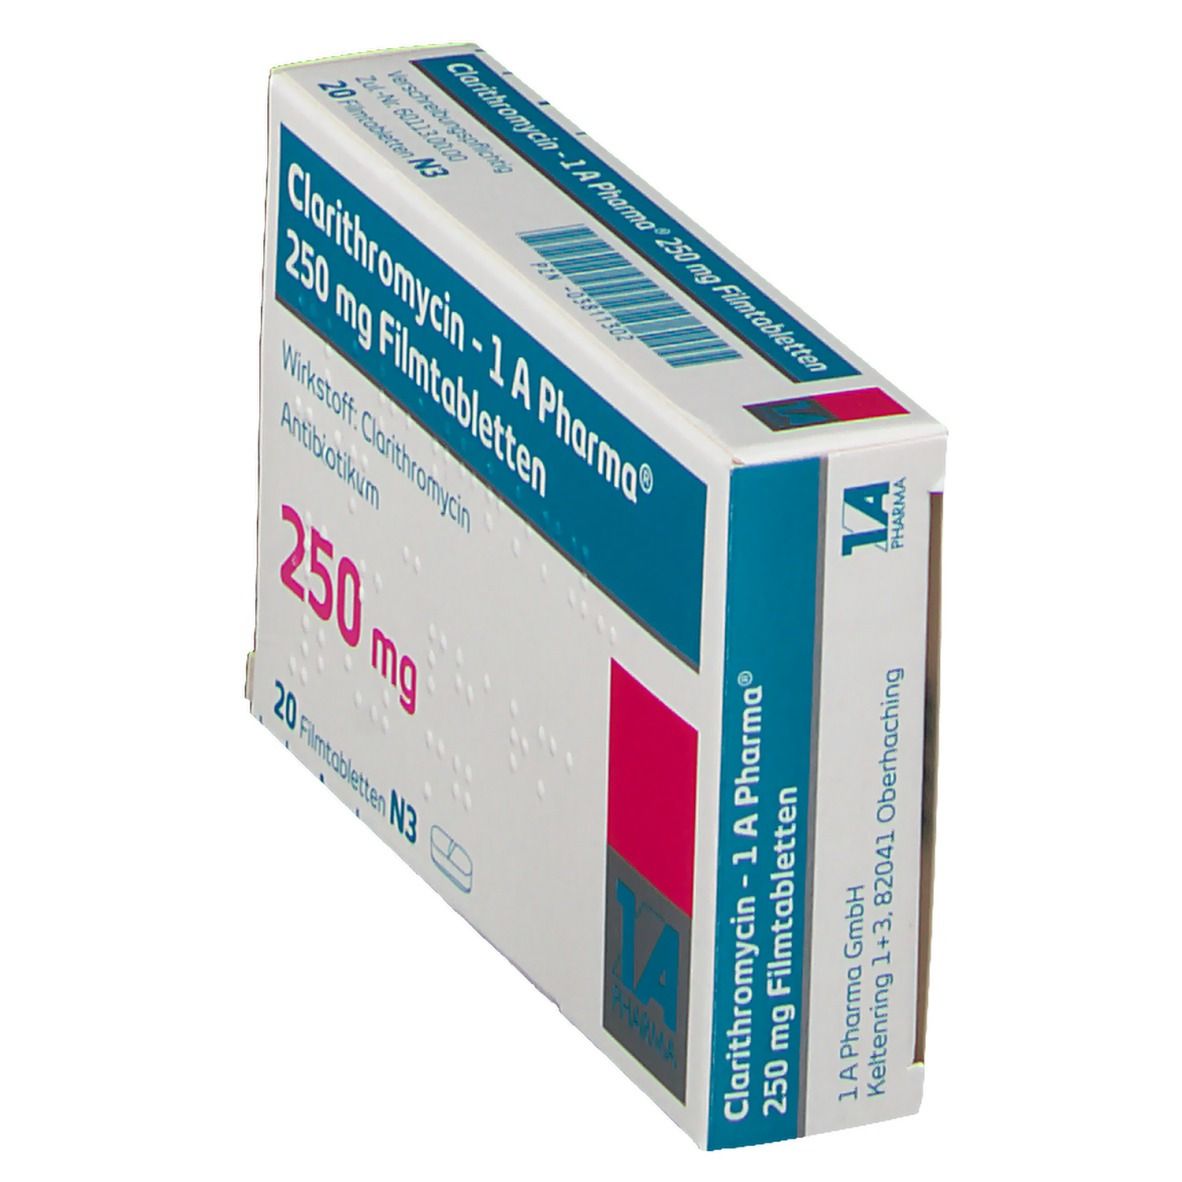 Clarithromycin 1A Ph 250Mg